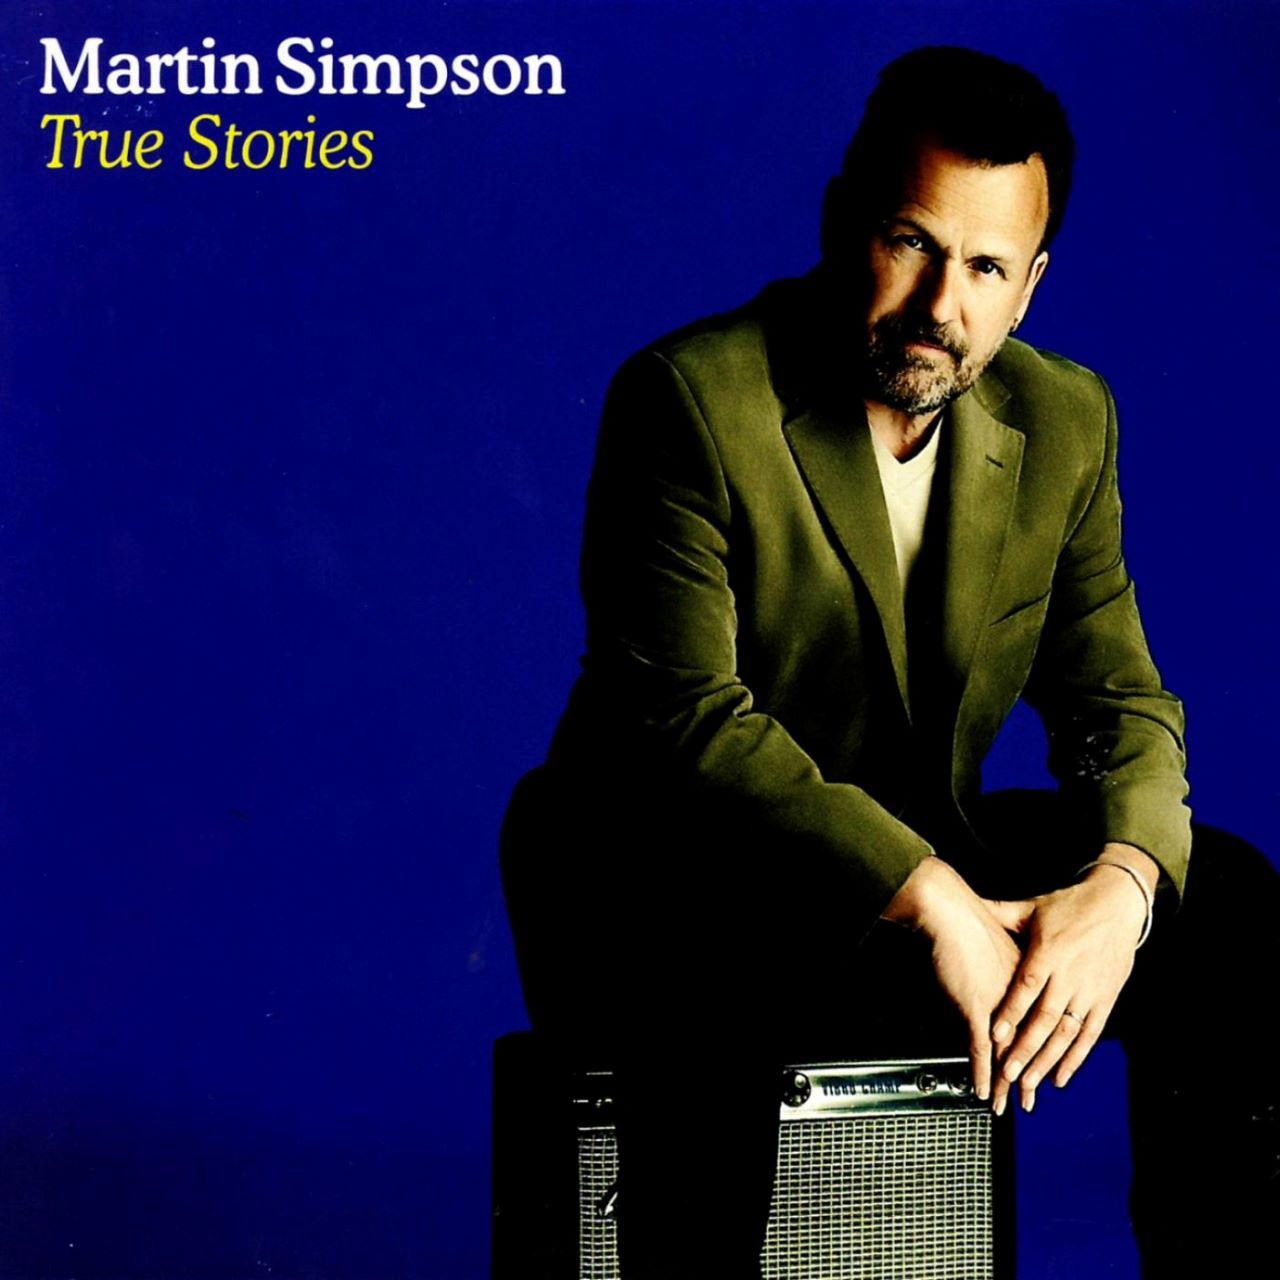 Martin Simpson - True Stories cover album